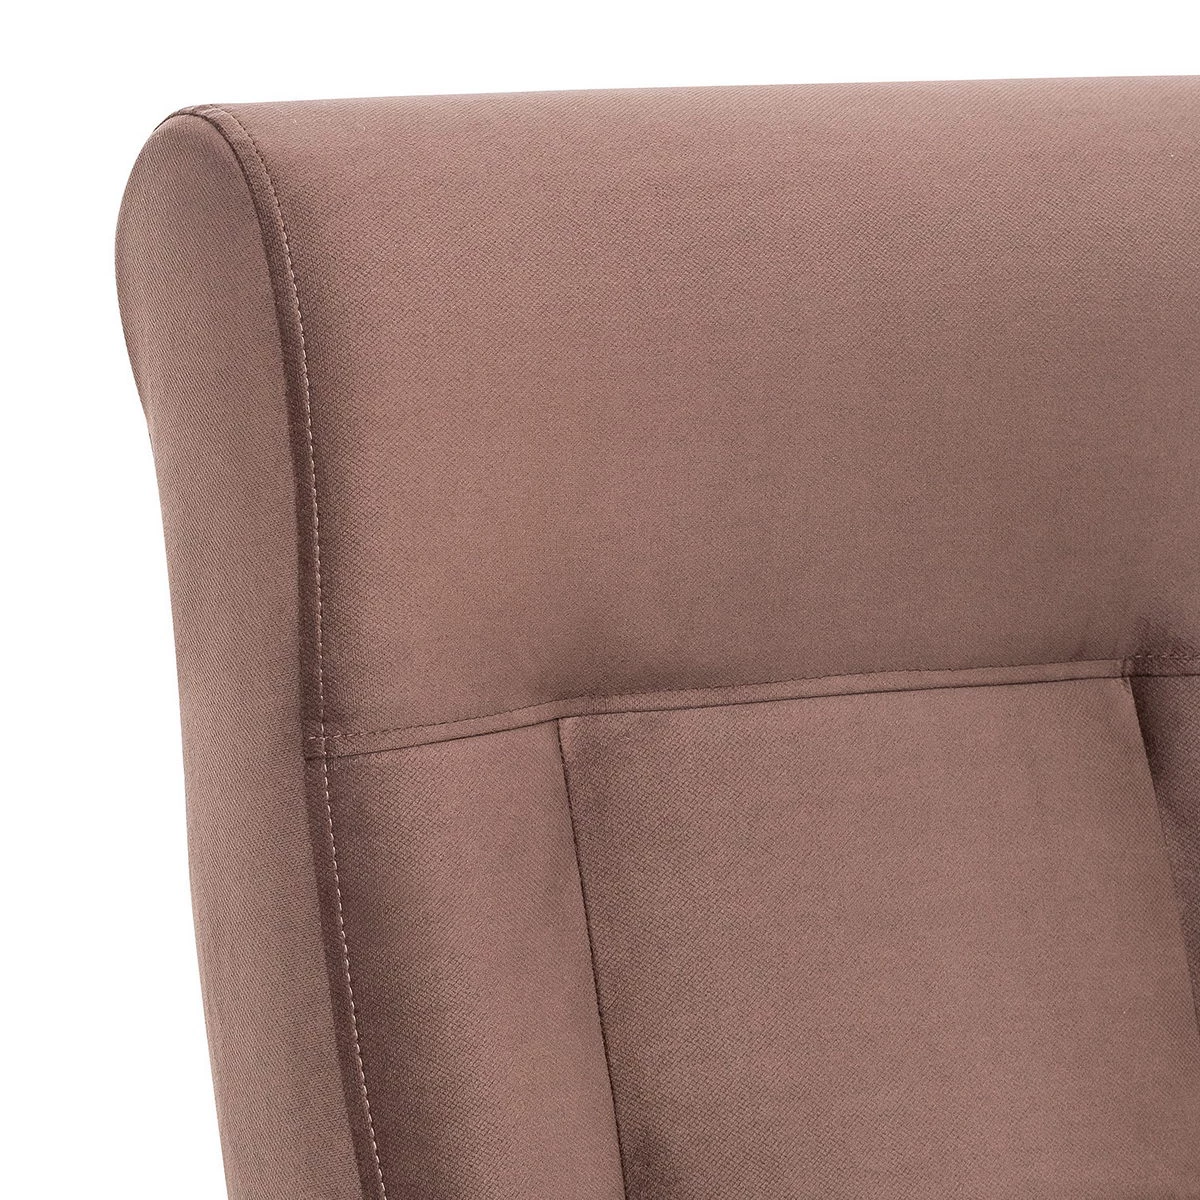 Кресло для отдыха Модель 51 (Импэкс). Цвет каркаса: Венге; Цвет обивки: Maxx 235